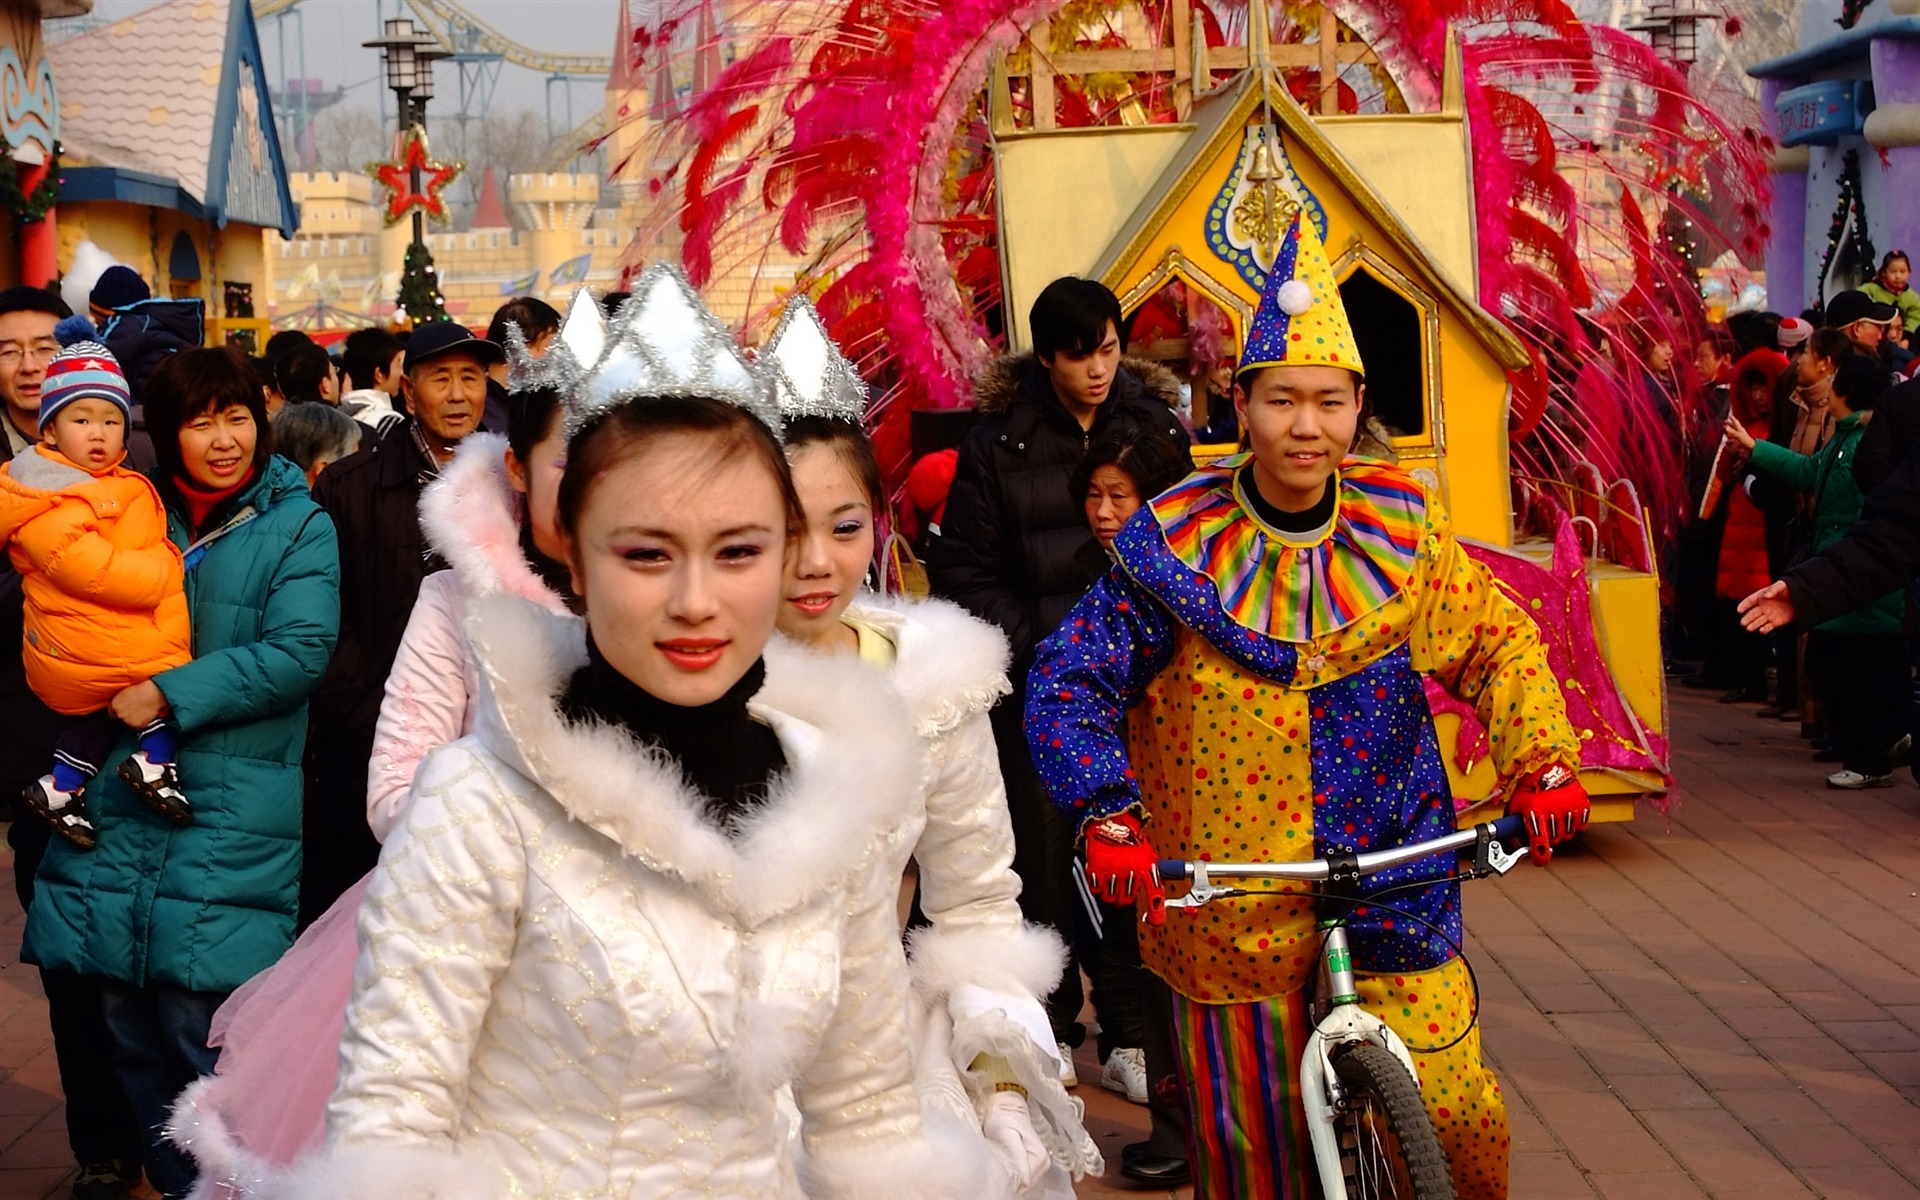 Happy Čínský Nový rok v Pekingu Yang Temple (prutu práce) #1 - 1920x1200